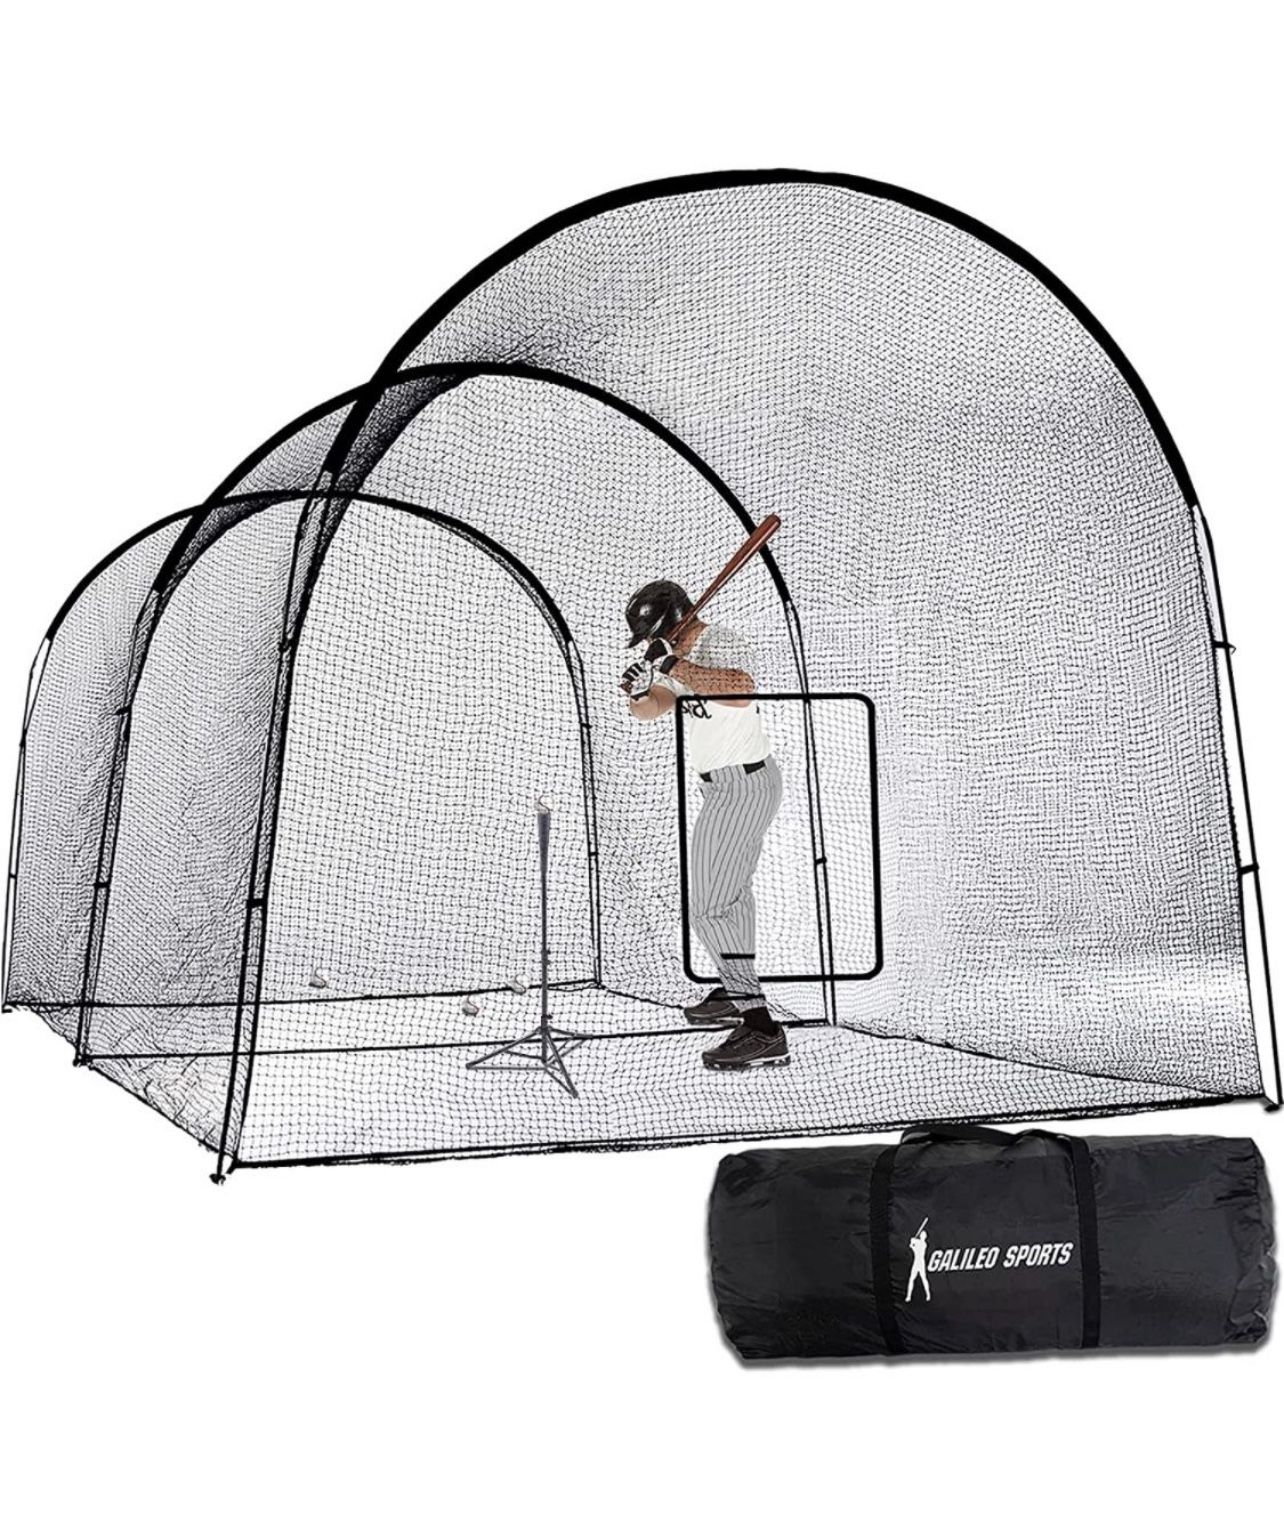 Batting cage baseball softball 